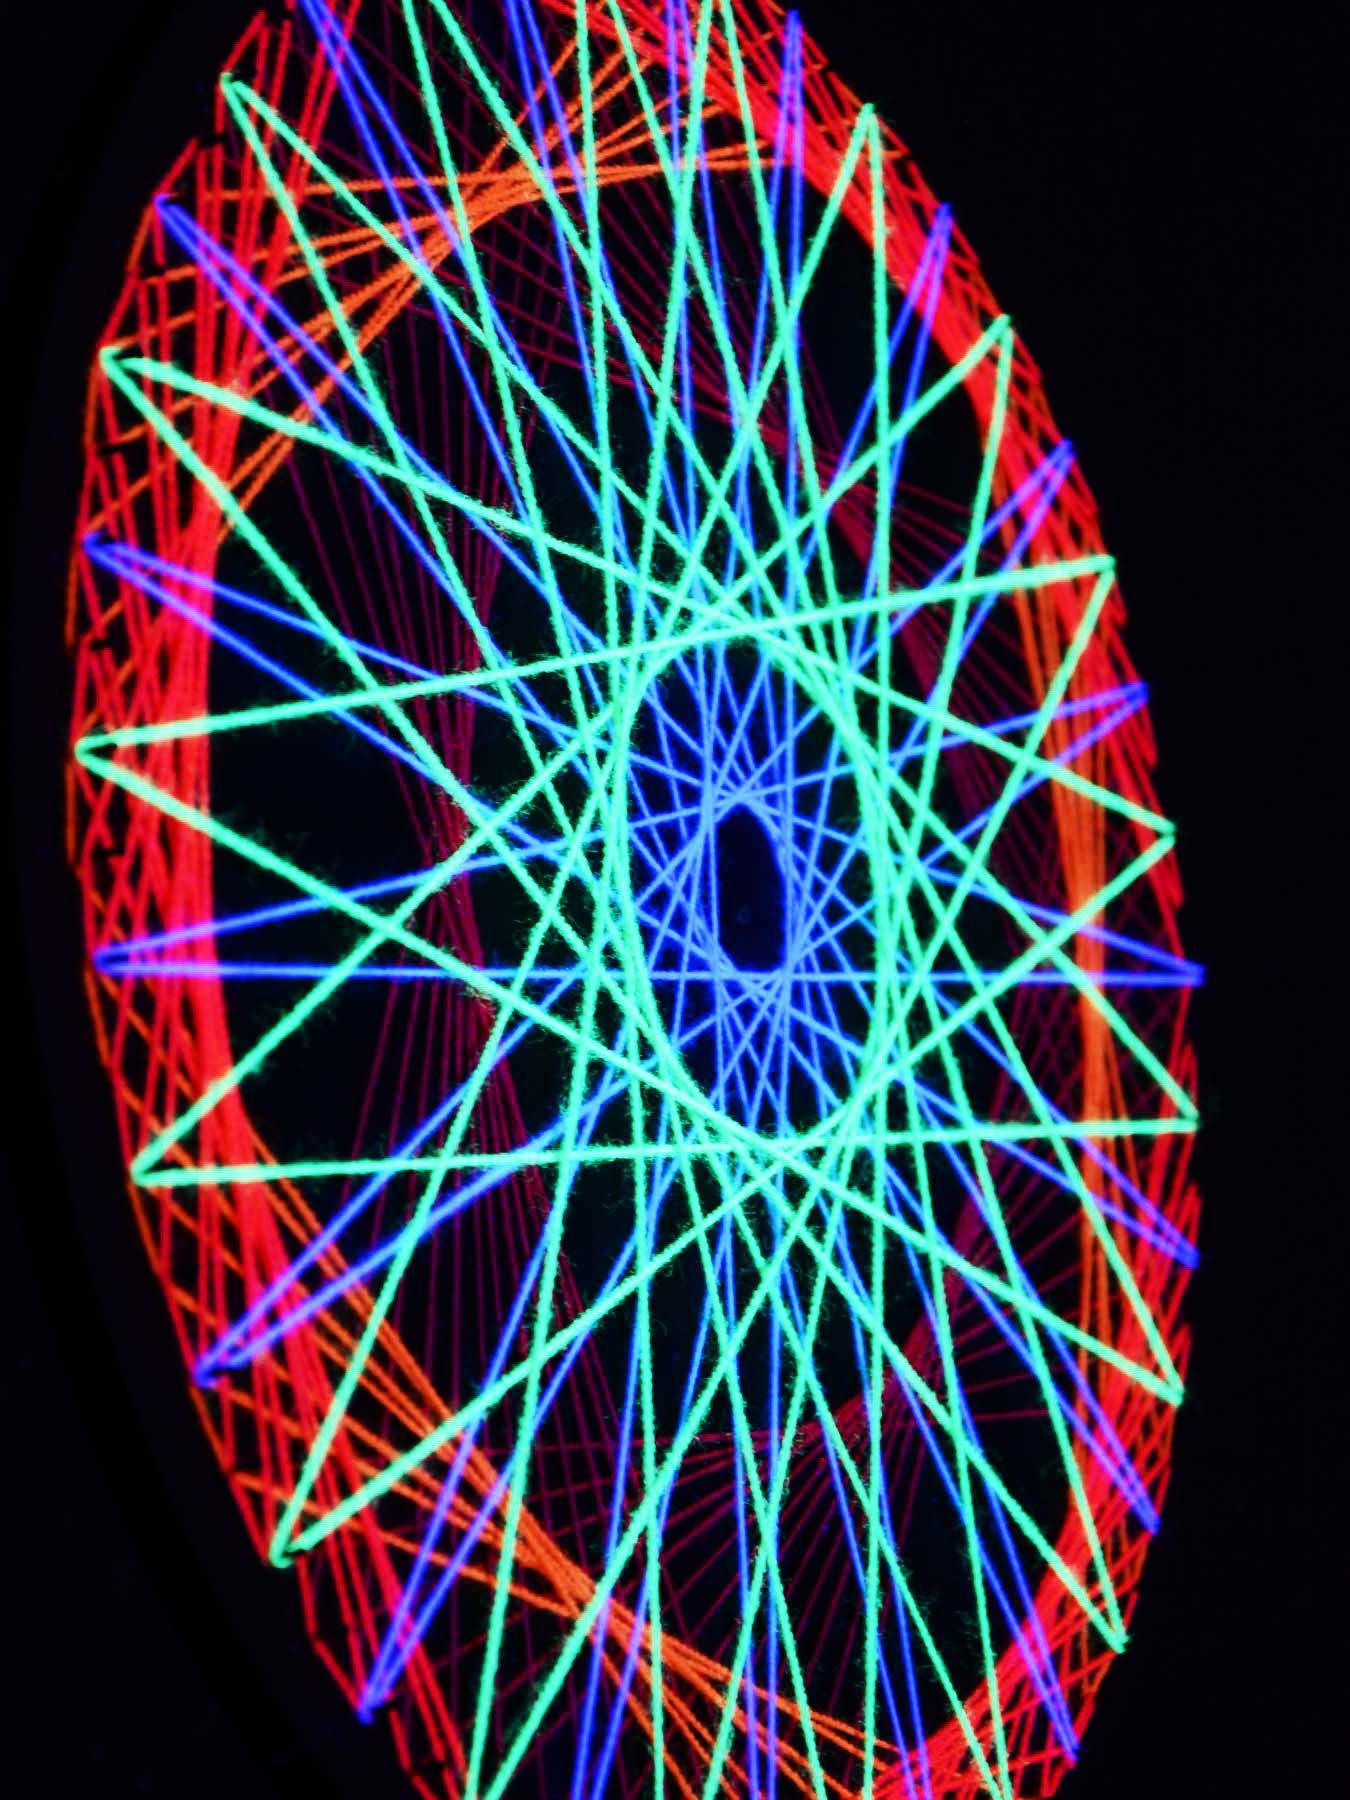 PSYWORK Dekoobjekt Schwarzlicht 2D StringArt Wheel", "Spinning leuchtet 40cm, Kreis Fadendeko Schwarzlicht unter UV-aktiv